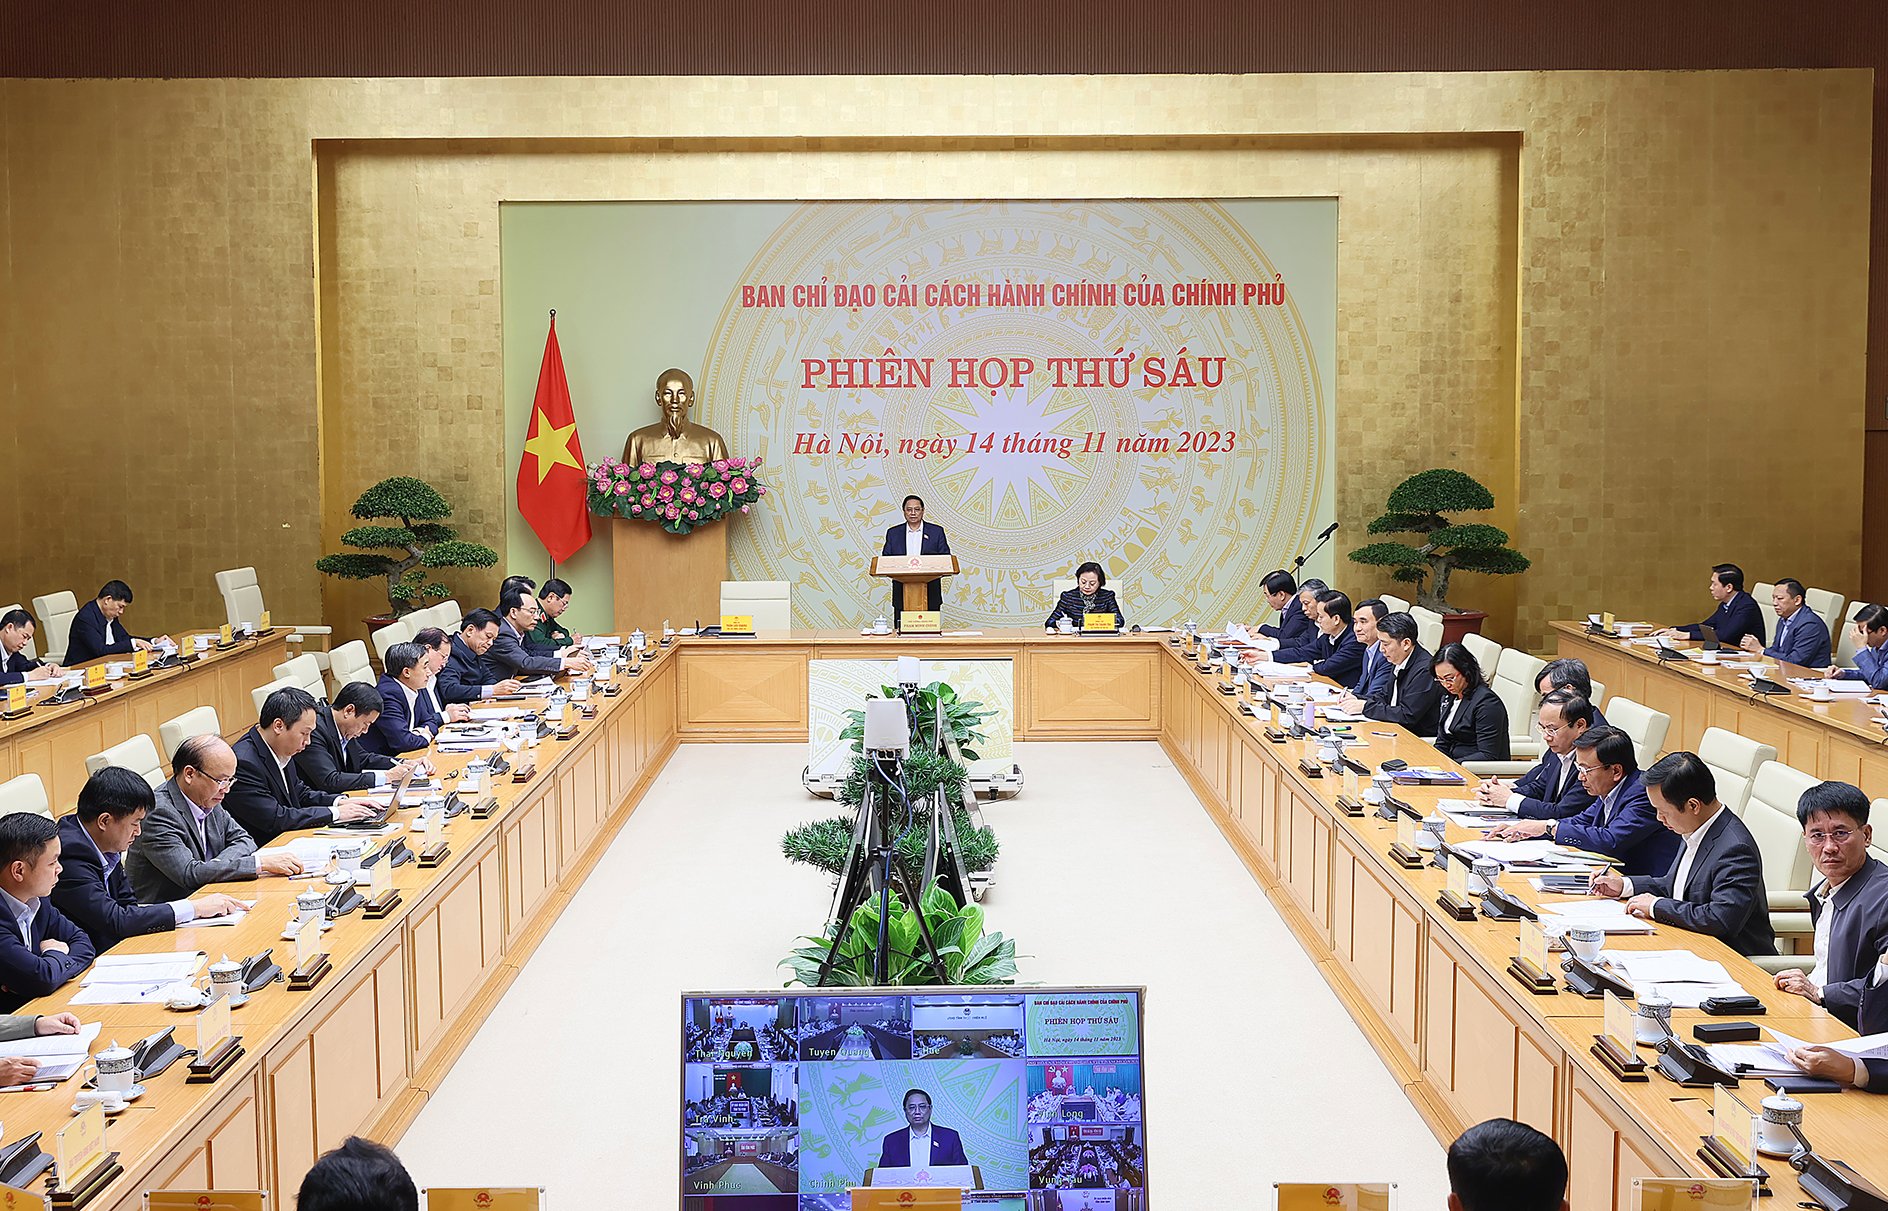 Thủ tướng Phạm Minh Chính chủ trì phiên họp Ban Chỉ đạo Cải cách hành chính của Chính phủ - Ảnh: VGP/Nhật Bắc